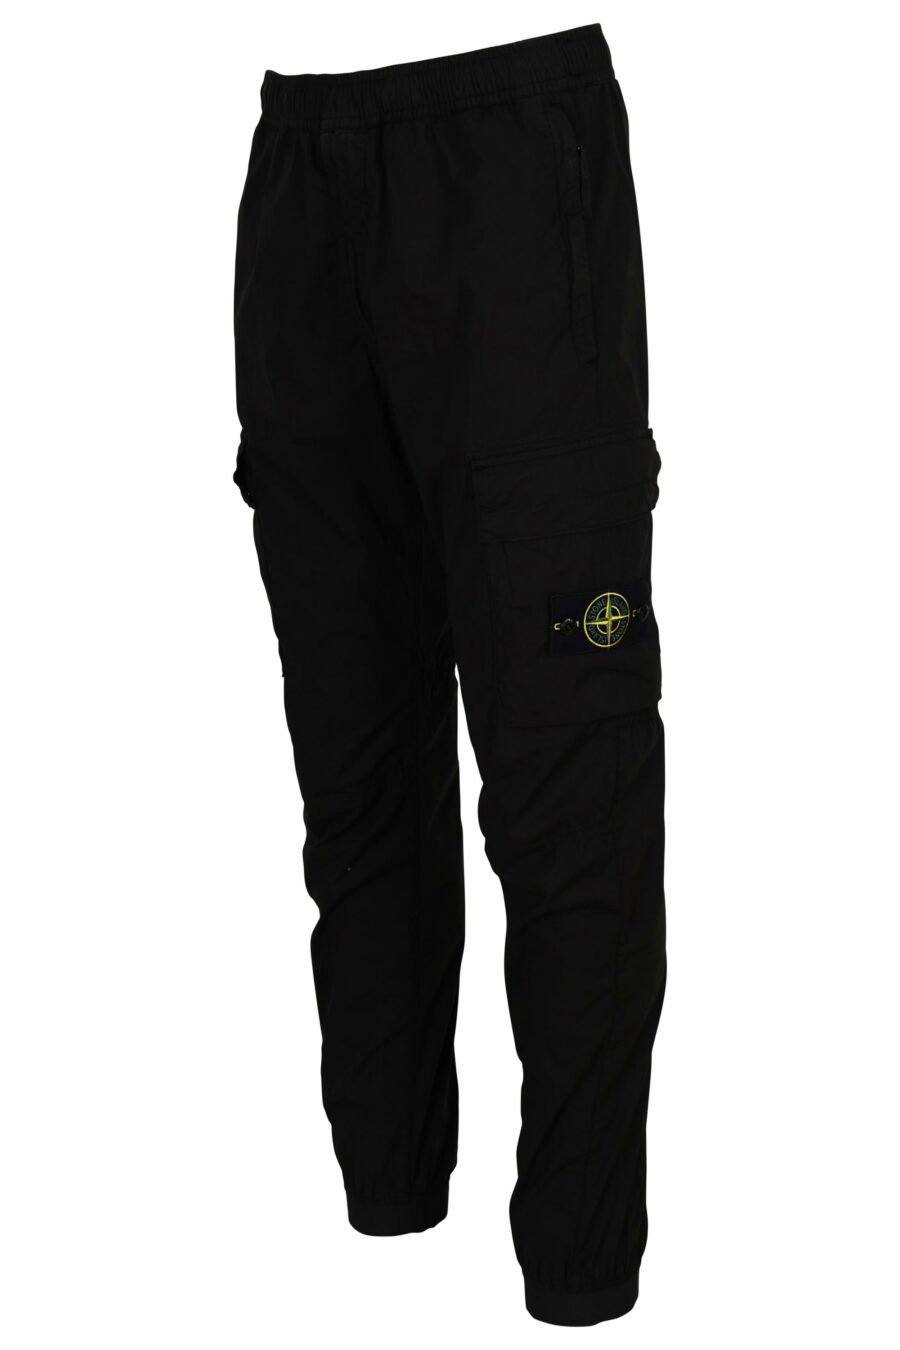 Pantalon fuselé noir avec logo boussole - 8052572851124 2